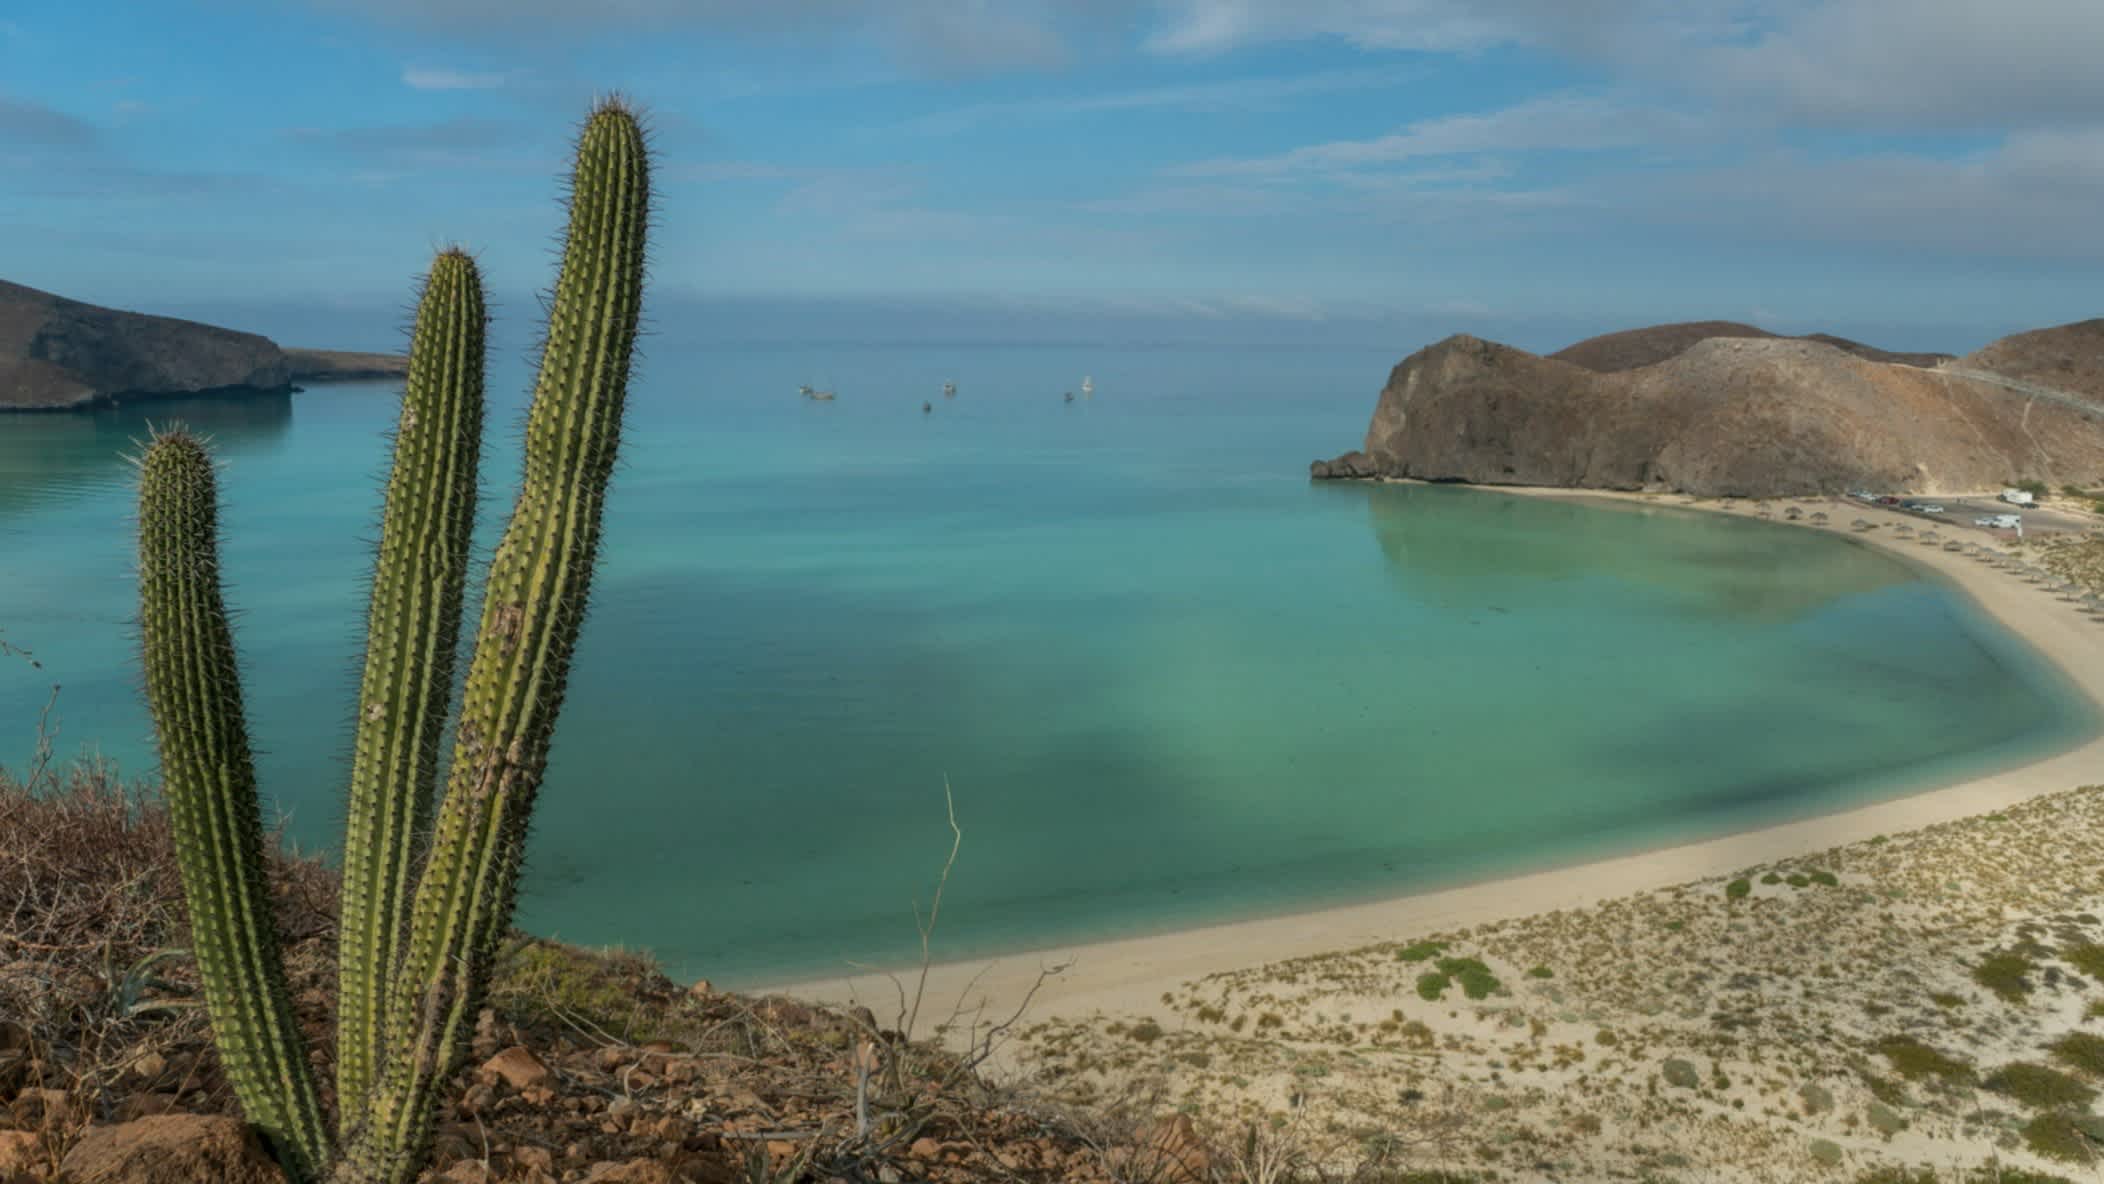 Wunderschöner Balandra Beach am Golf von Kalifornien in der Nähe von La Paz Mexiko auf der Baja California Sur mit einem Kaktus im Bild und Blick über die gesamte Bucht.